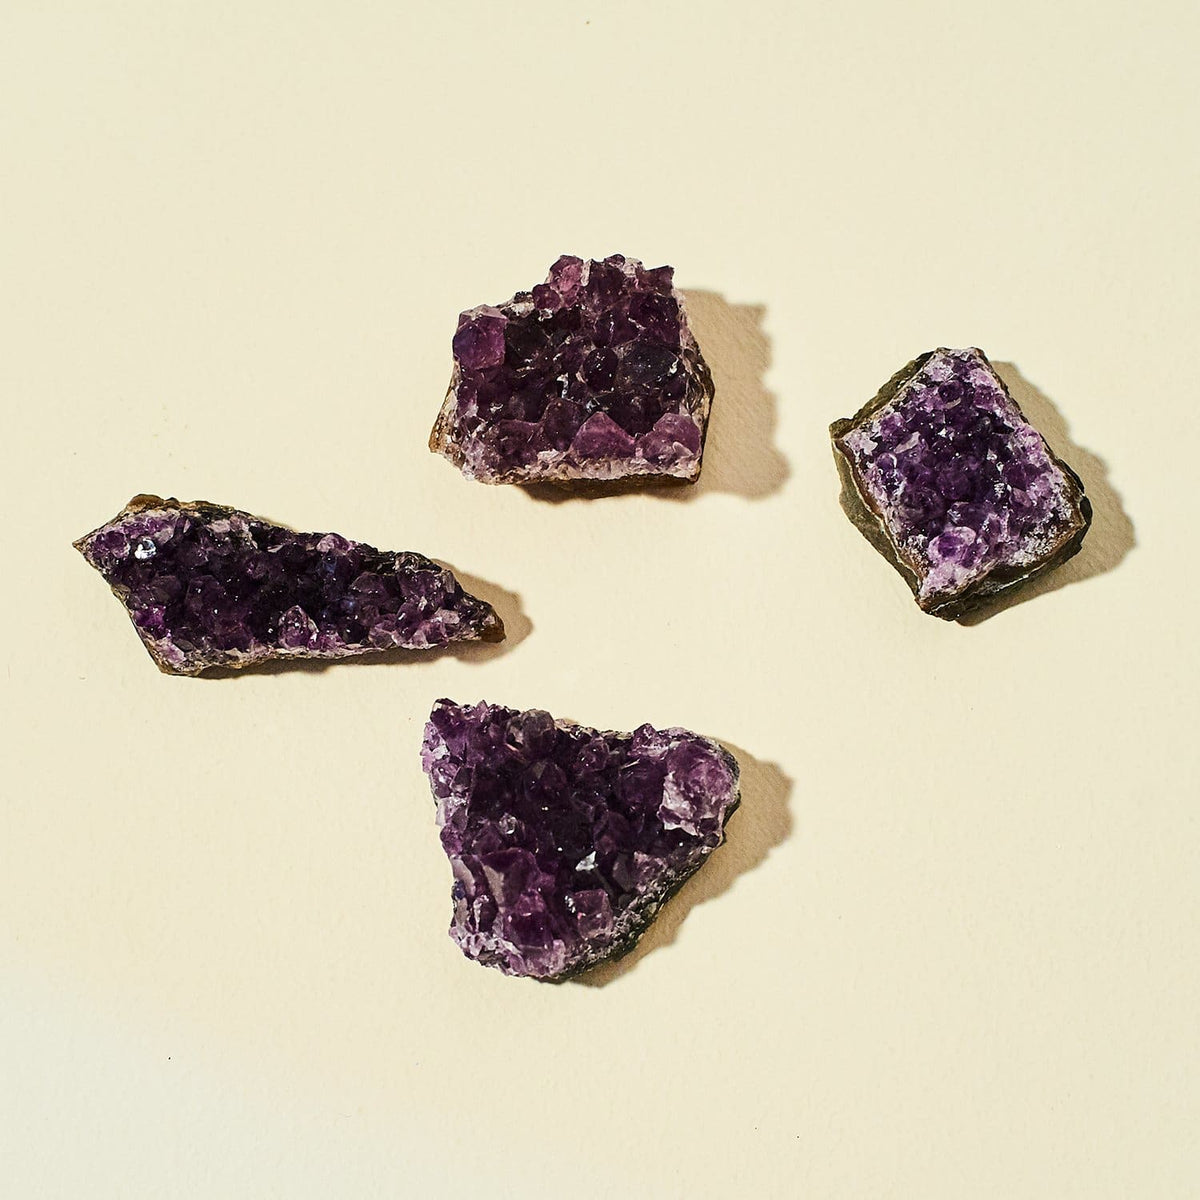 Raw Amethyst - Large Crystal Crystal - Shoppe - Energy - 